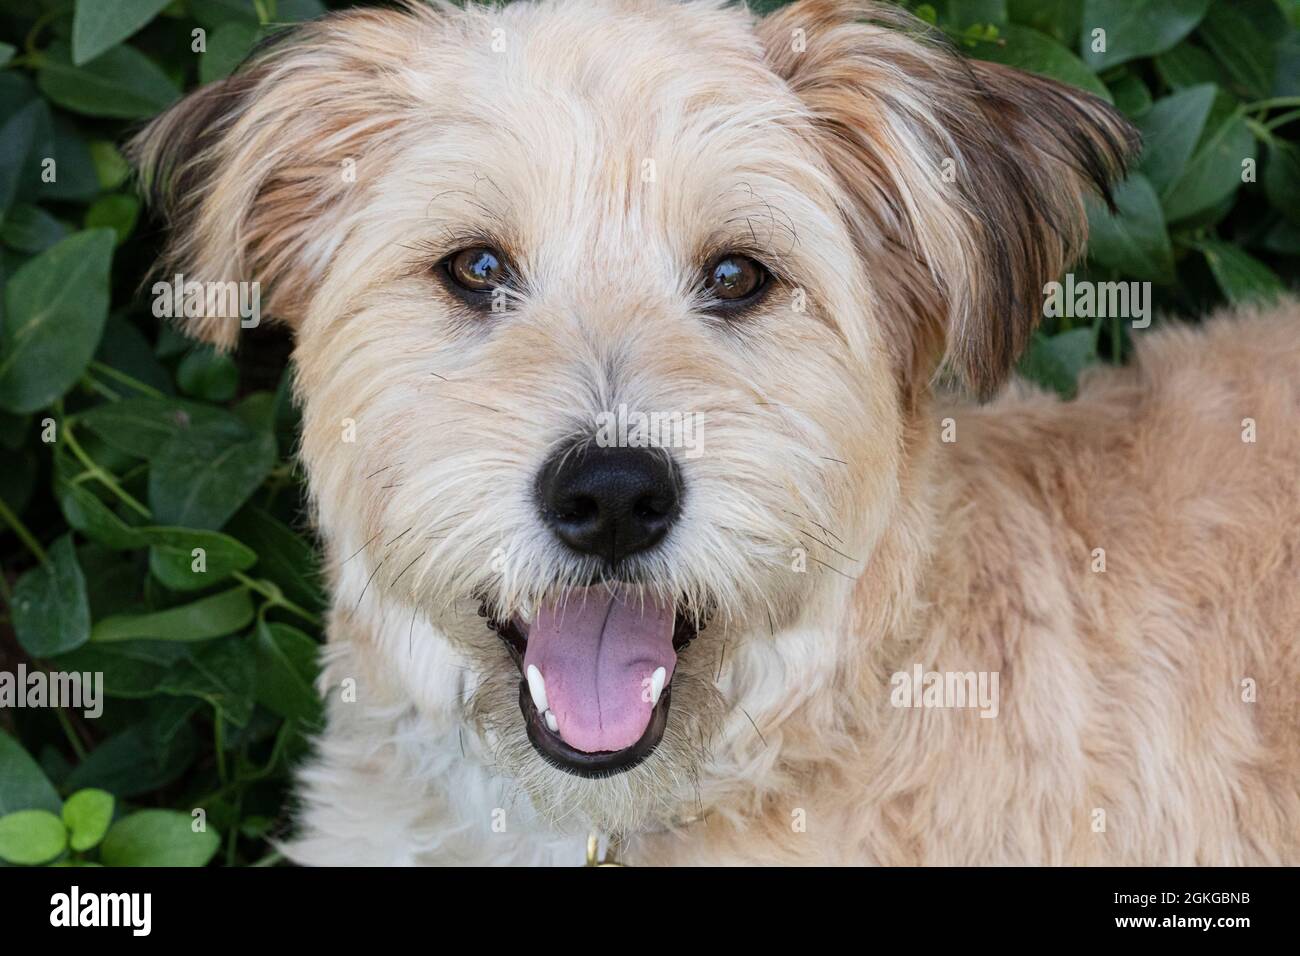 Mixed-breed dog, looking at camera Stock Photo